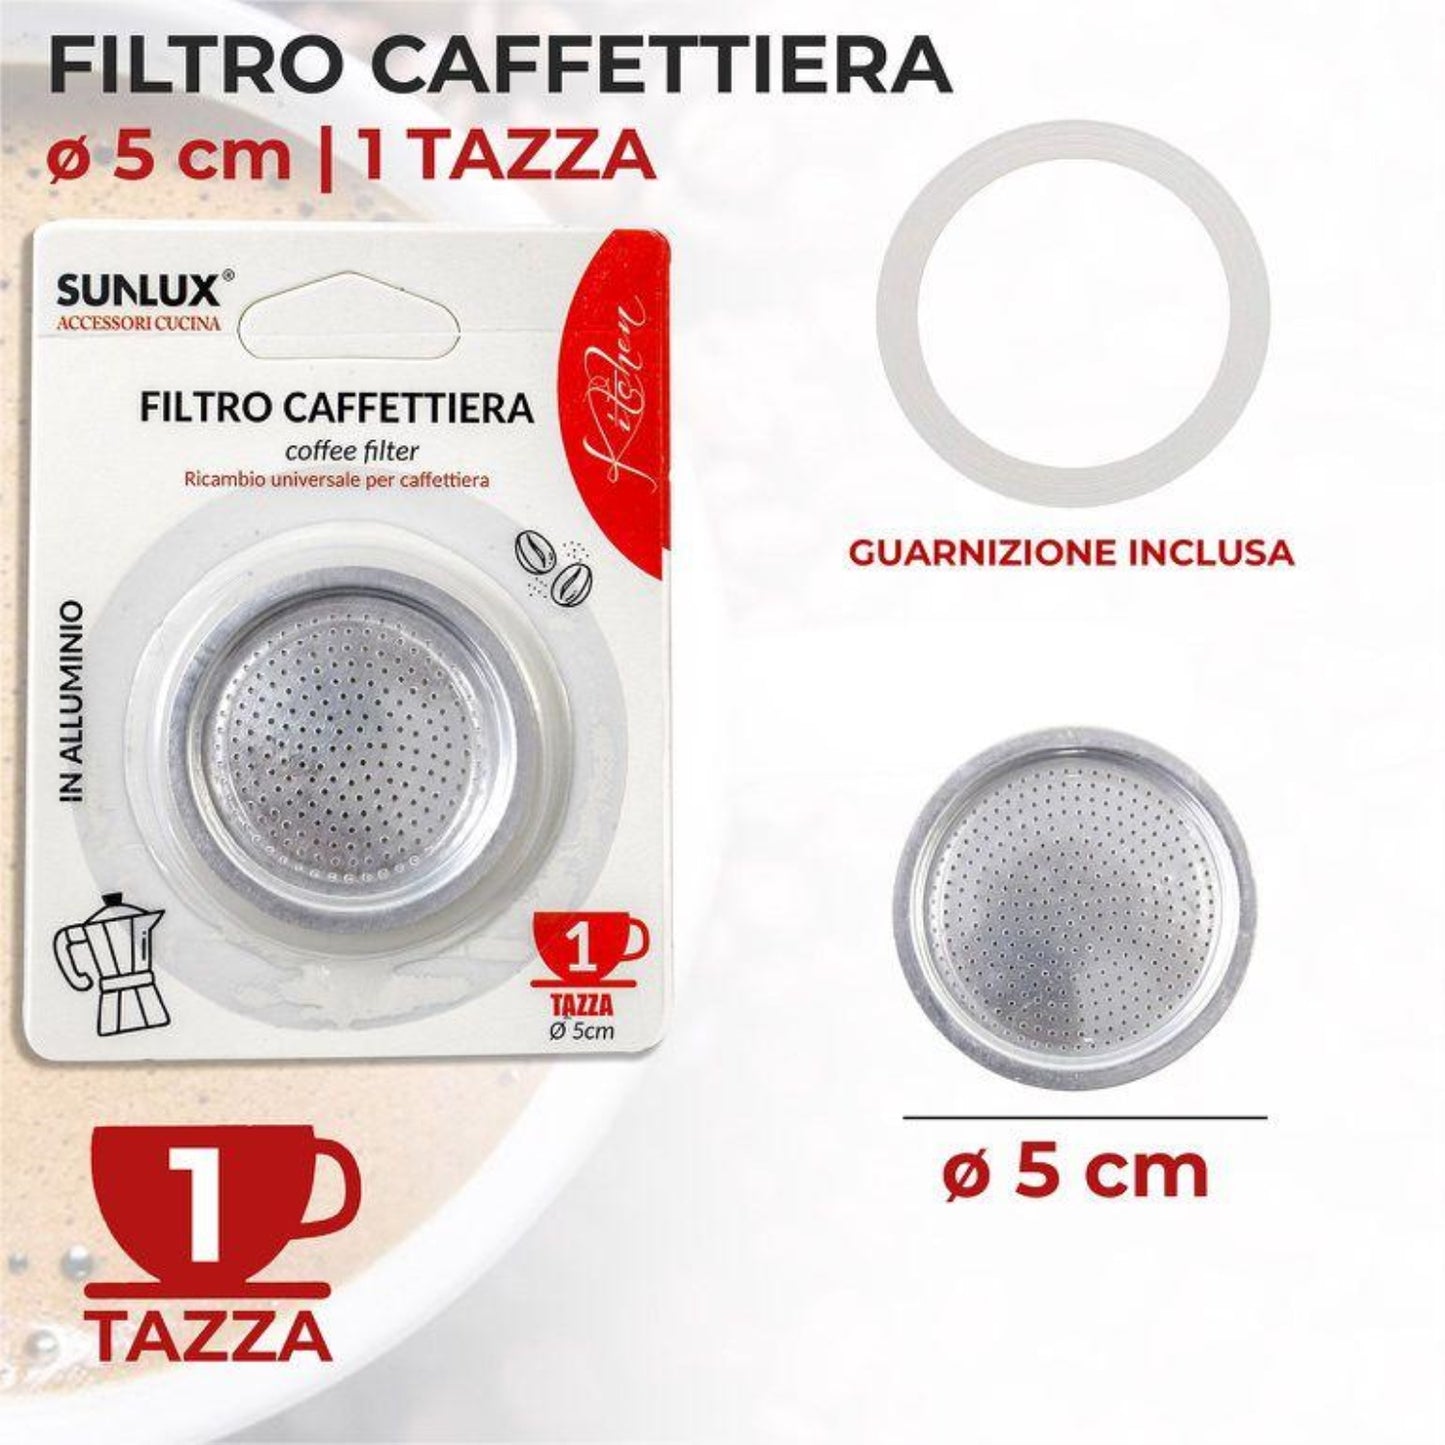 FILTRO CAFFETTIERA 1TZ